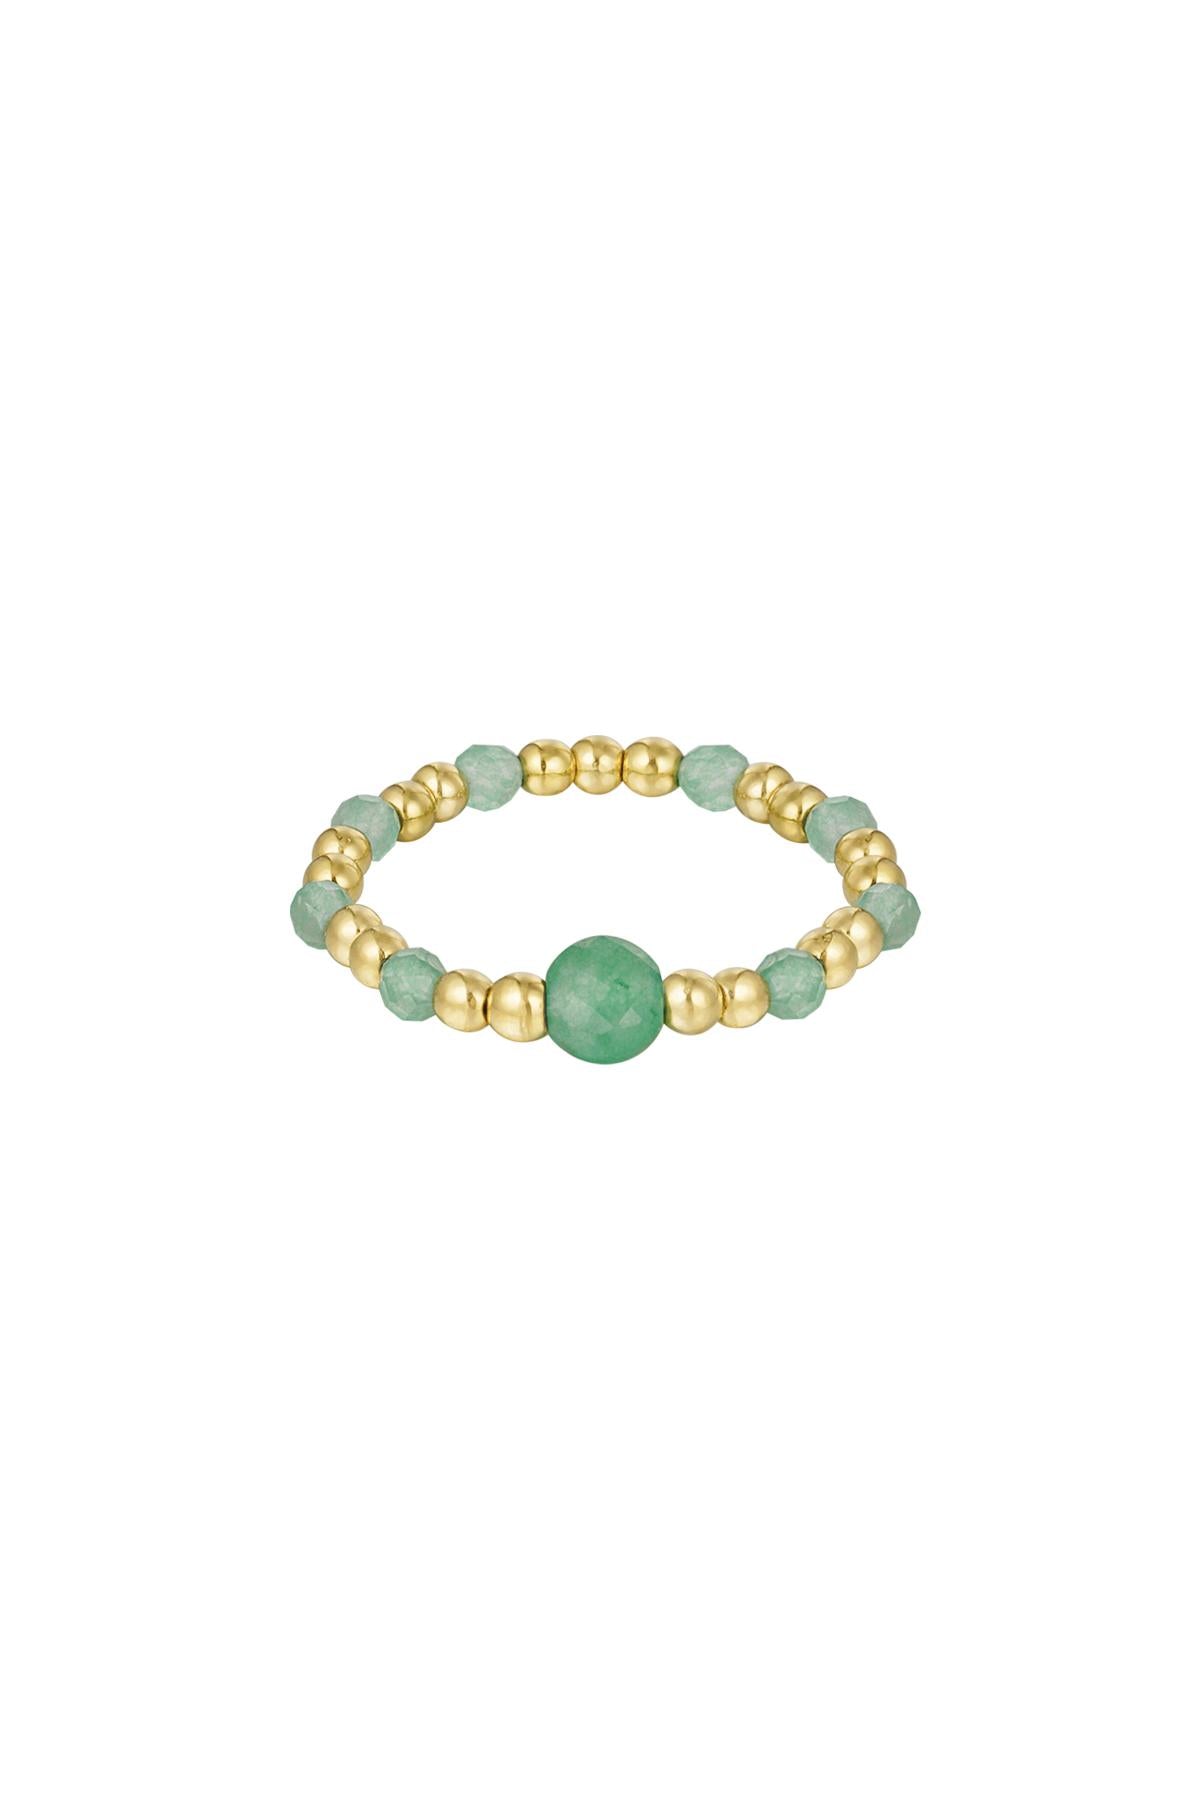 Ring jasmijn groen met goud